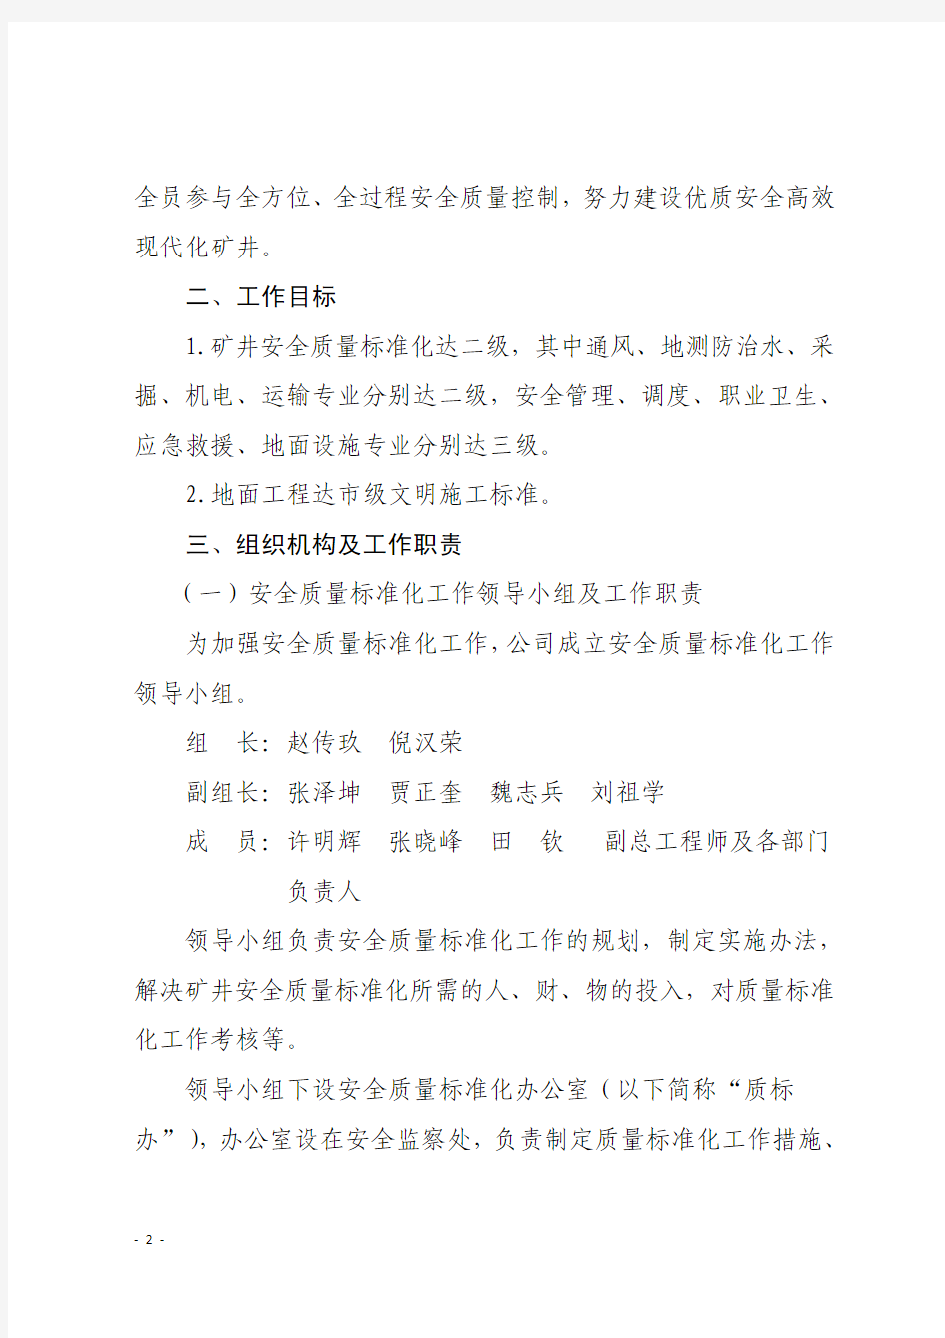 49广旺集团船景煤业公司关于2014年矿井安全质量标准化工作的通知